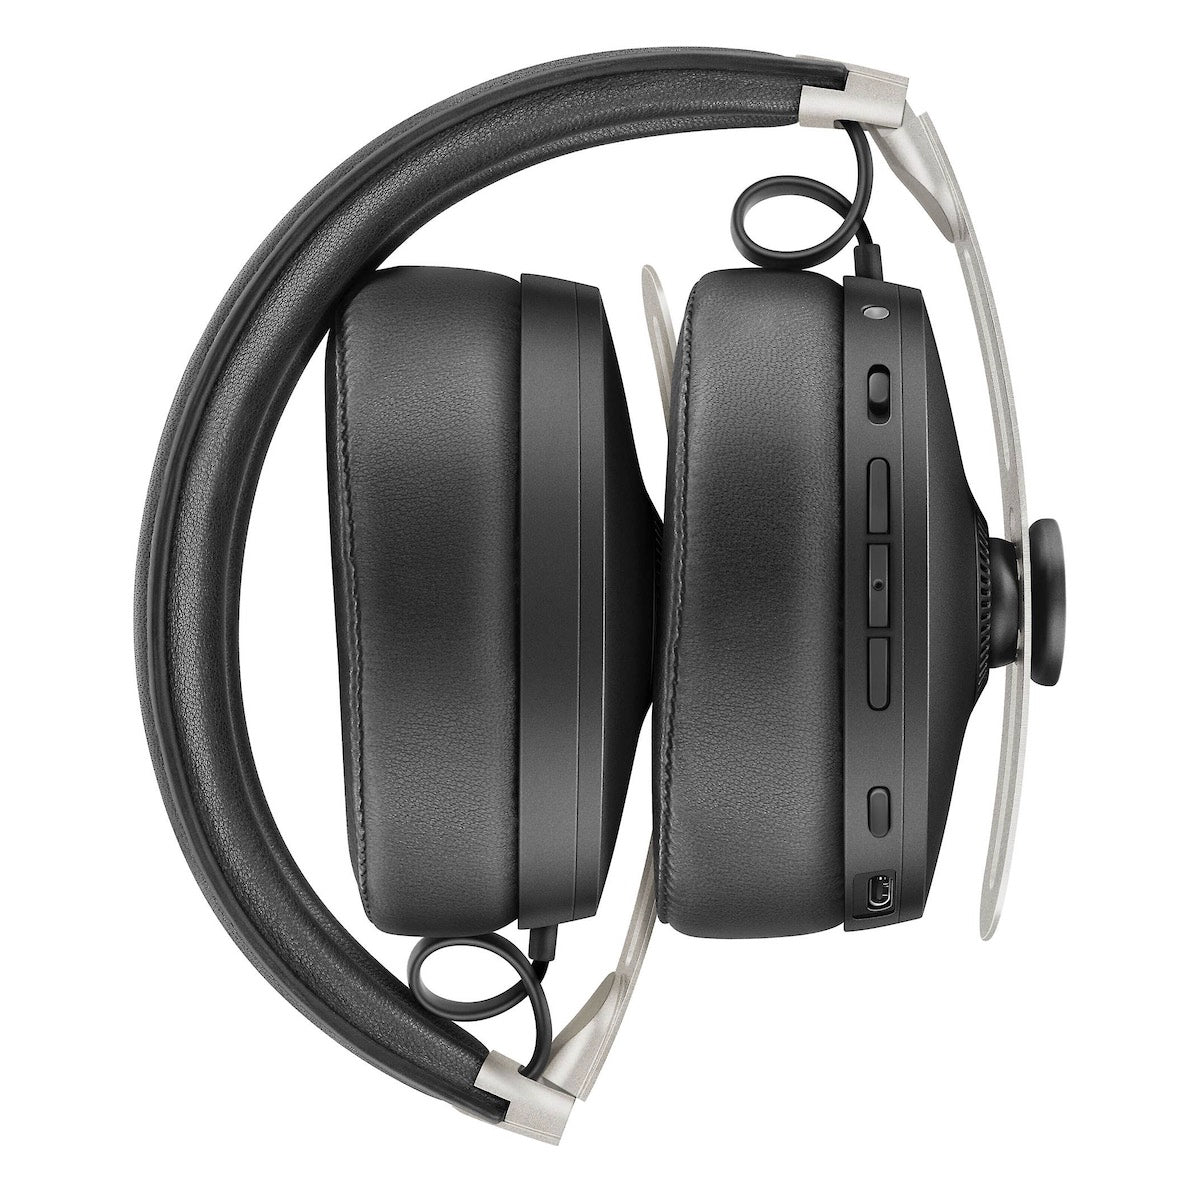 Sennheiser PC 3 Chat - On-Ear Stereo Headset